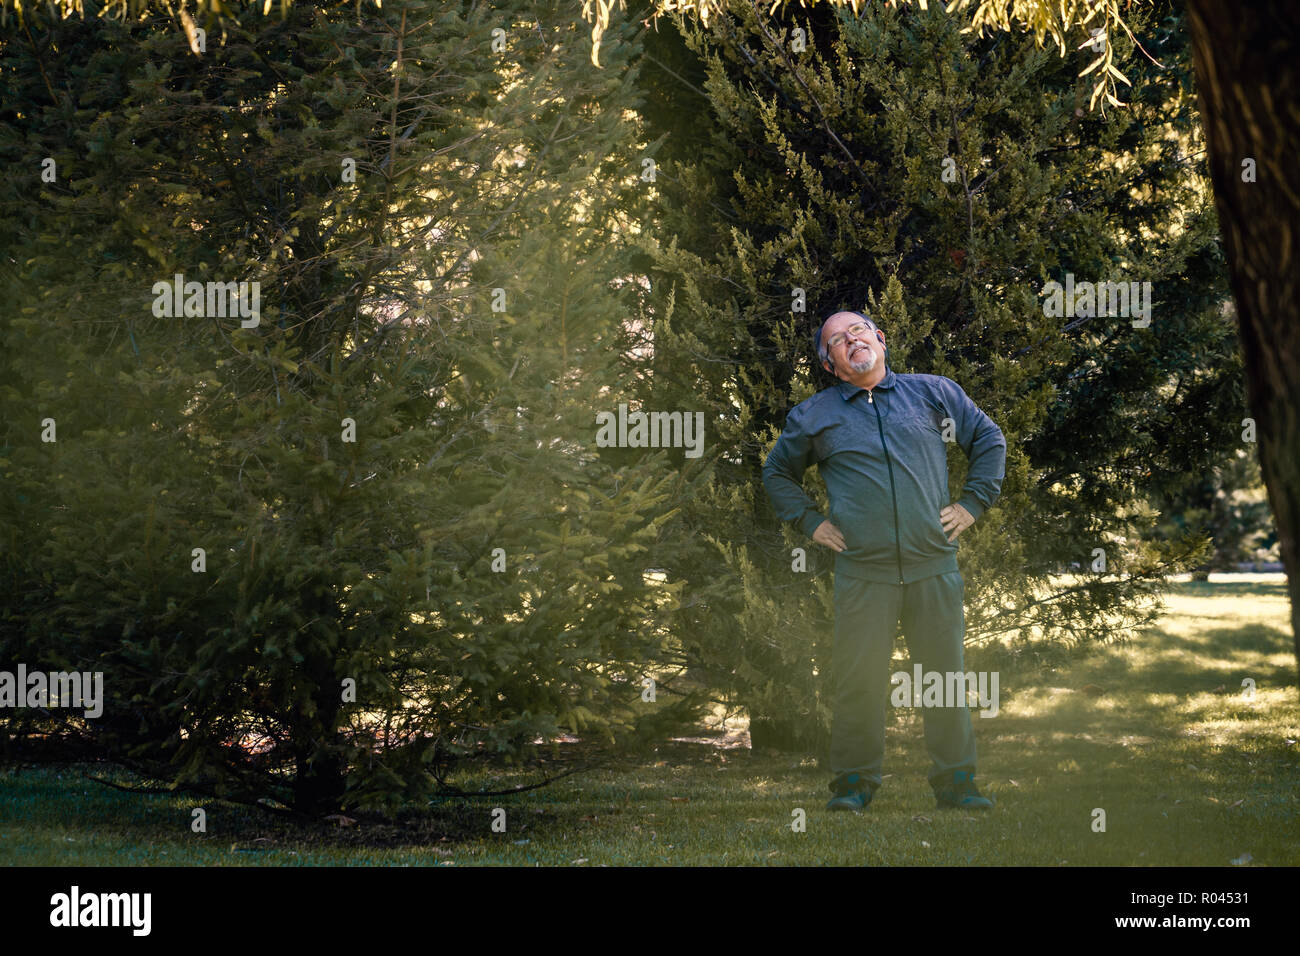 Ältere Menschen tun, körperliche Bewegung in einem grünen Park Stockfoto